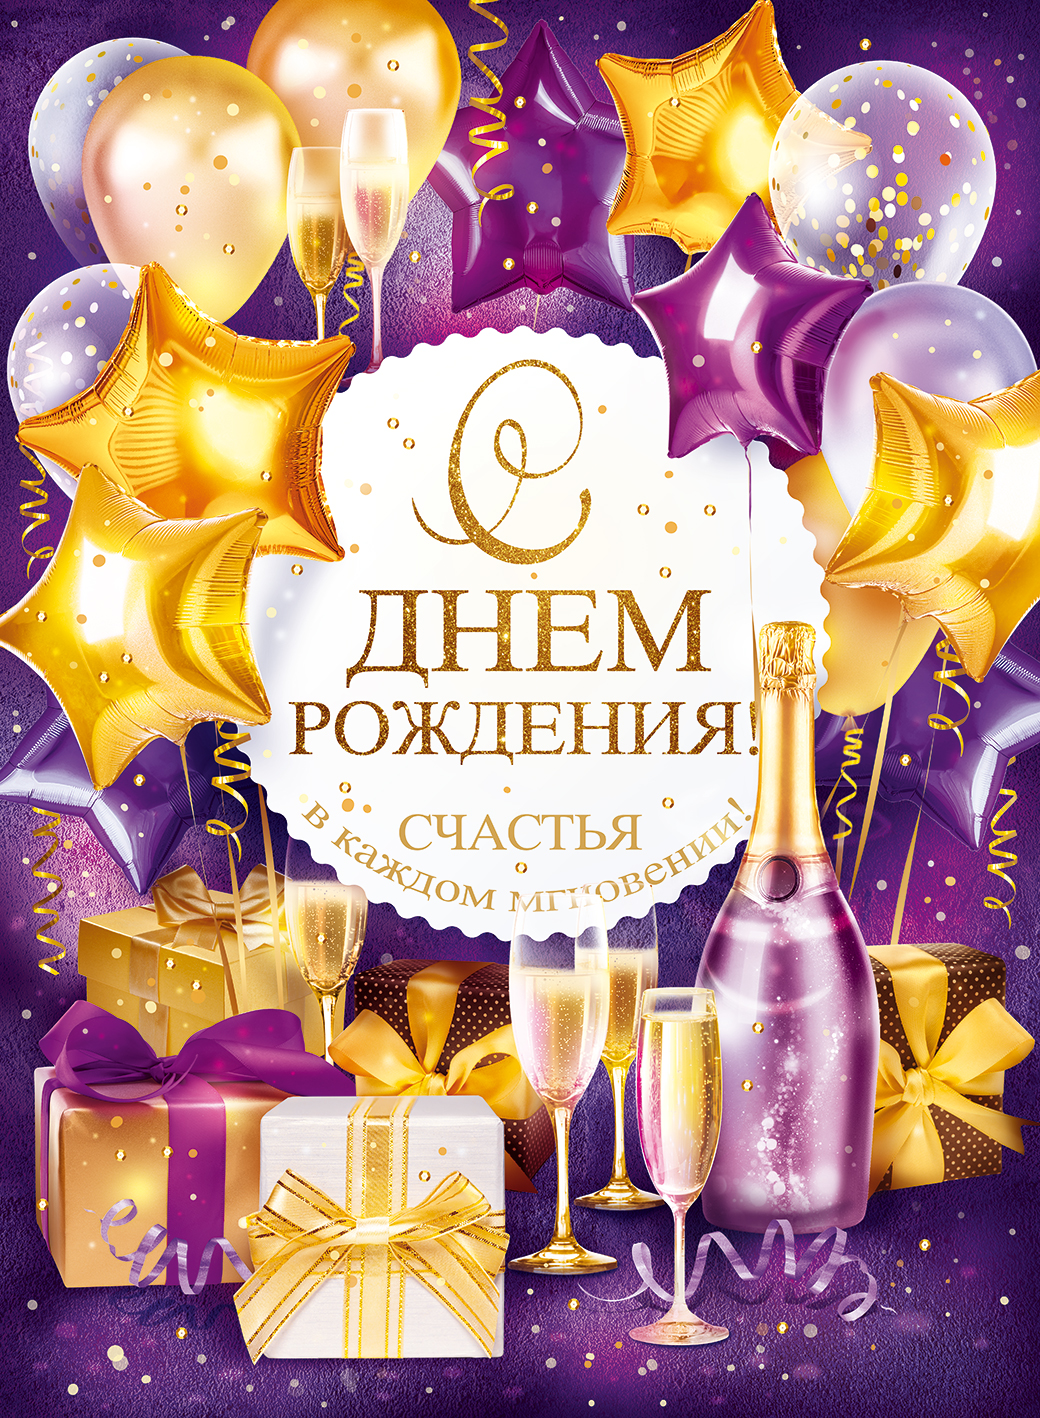 Плакат С Днем Рождения, Счастья! (шары и подарки), 44*60 см, 1 шт.